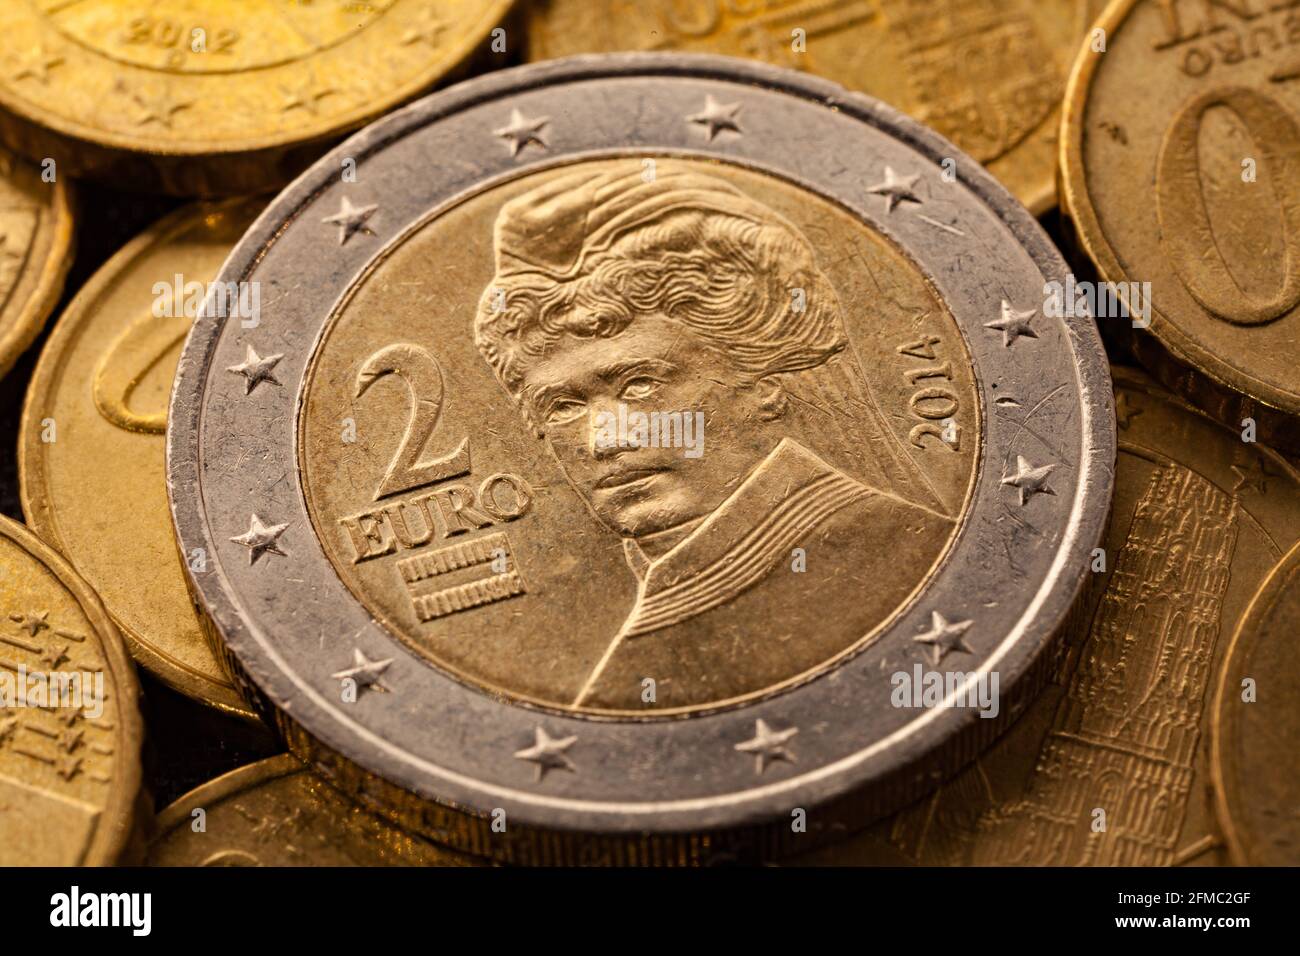 Serie von Makroaufnahmen von Euro-Münzen. Rückseite der 2-Euro-Münze.  Baujahr 2014. Land Österreich Stockfotografie - Alamy